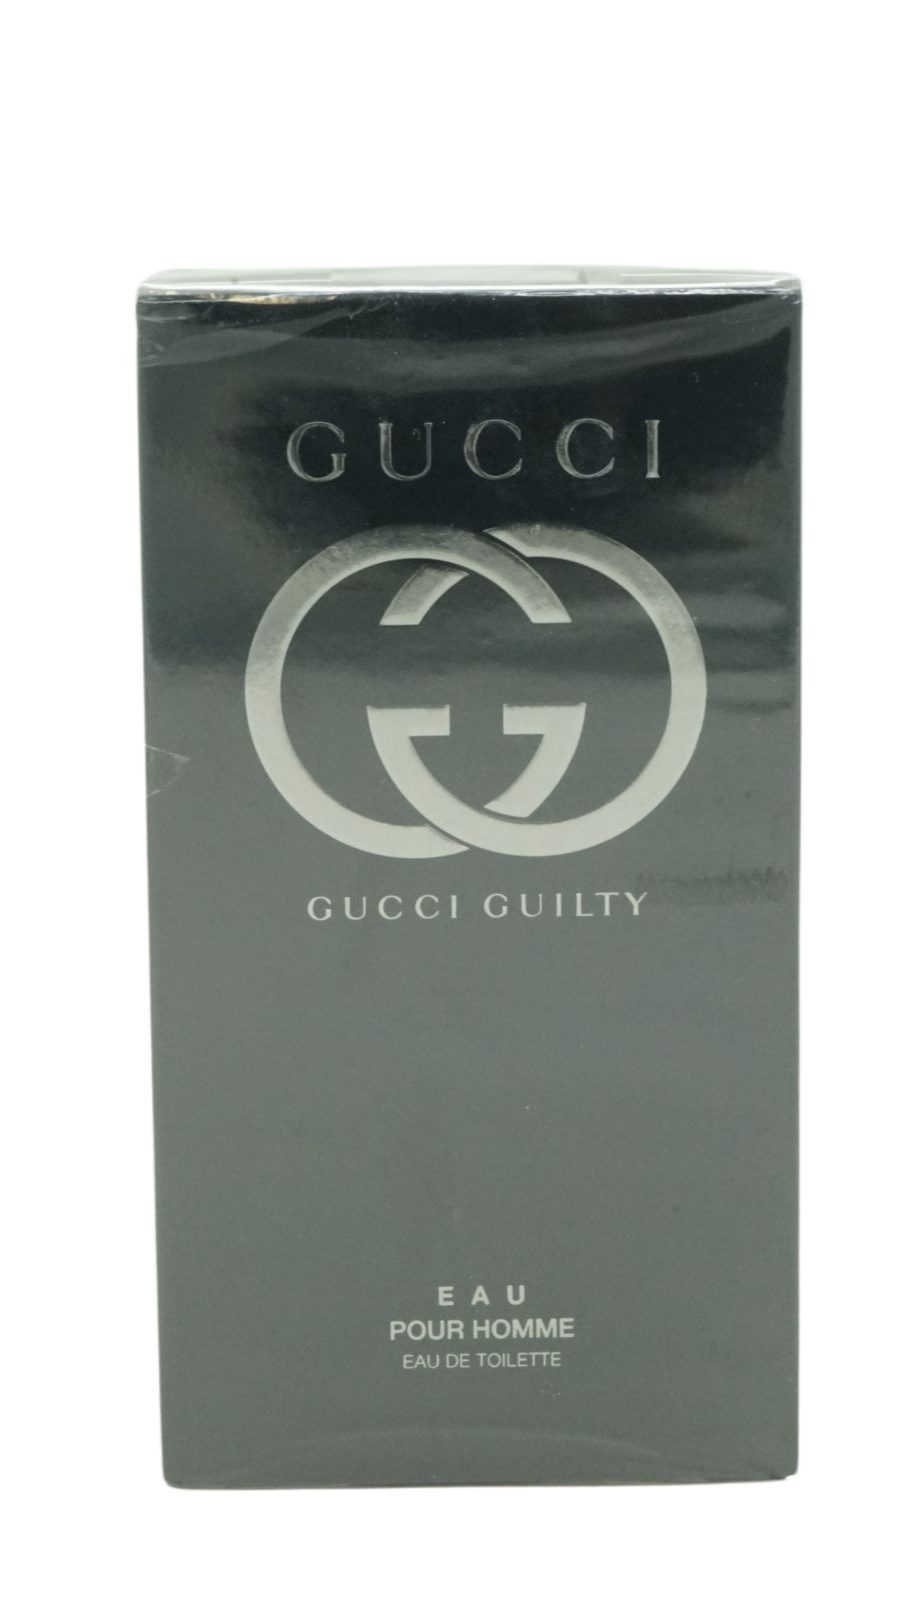 Toilette 90ml Gucci de Guilty Eau GUCCI Toilette homme pour Eau de